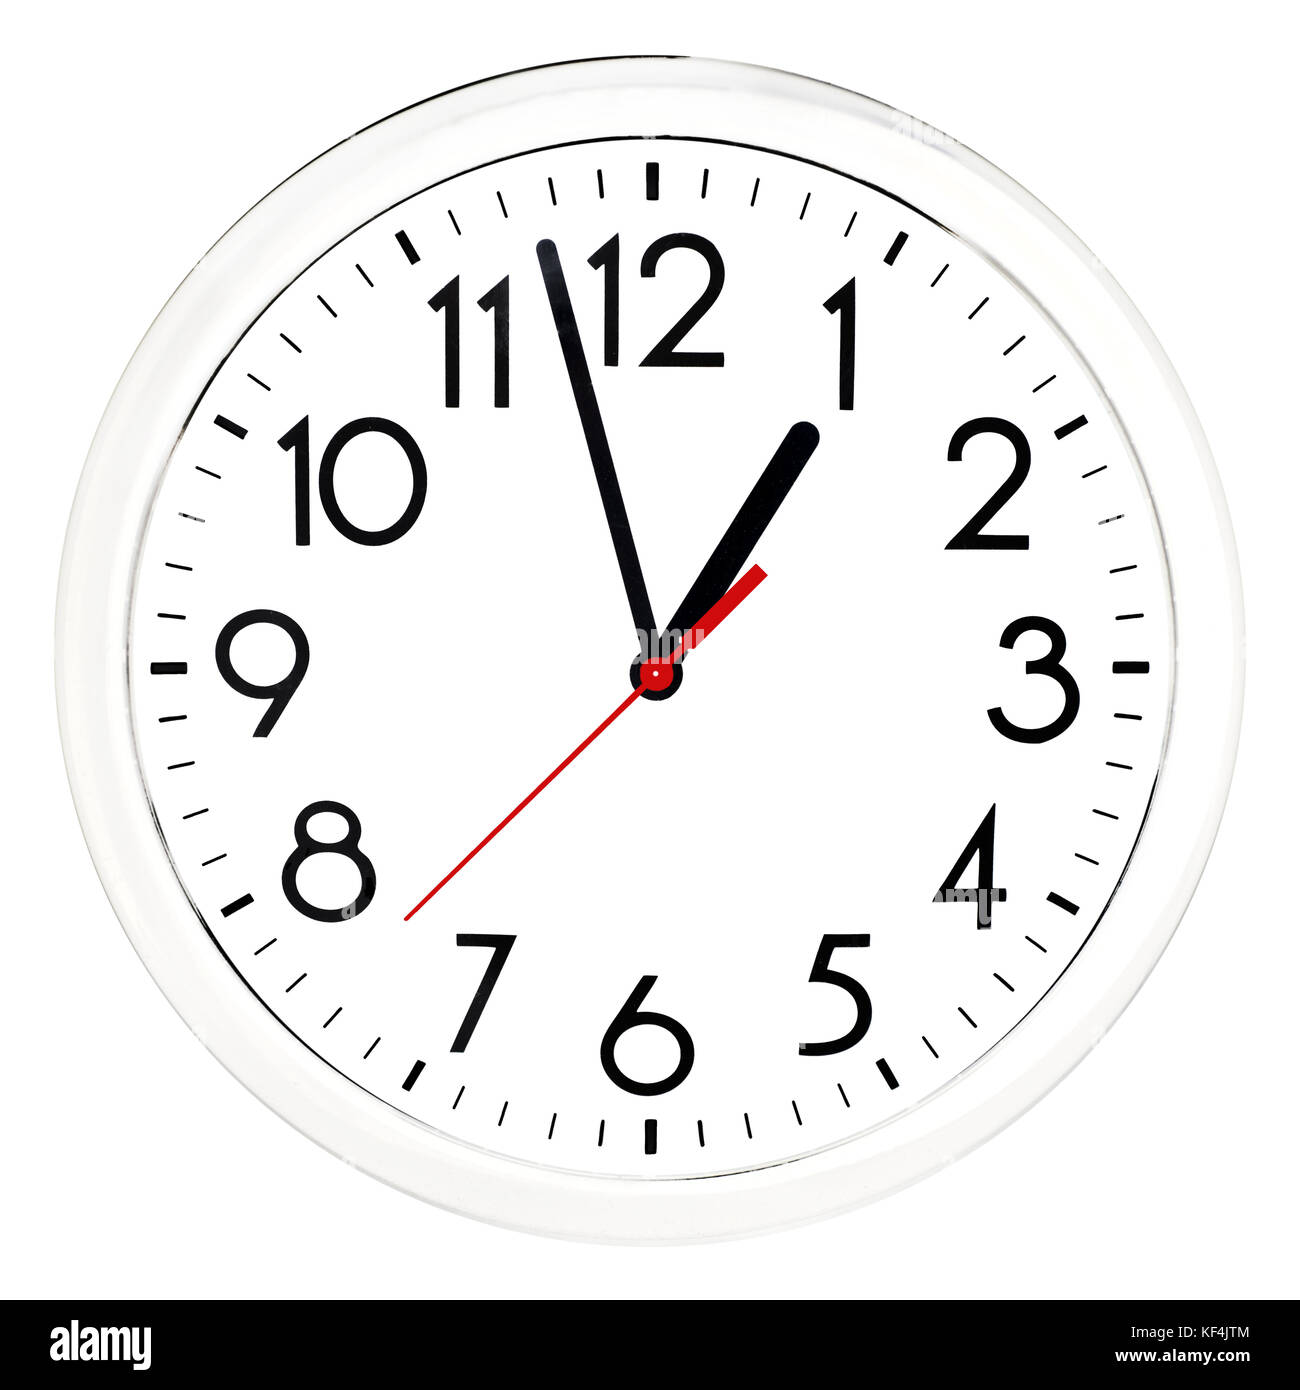 13 horloge Banque d'images détourées - Alamy